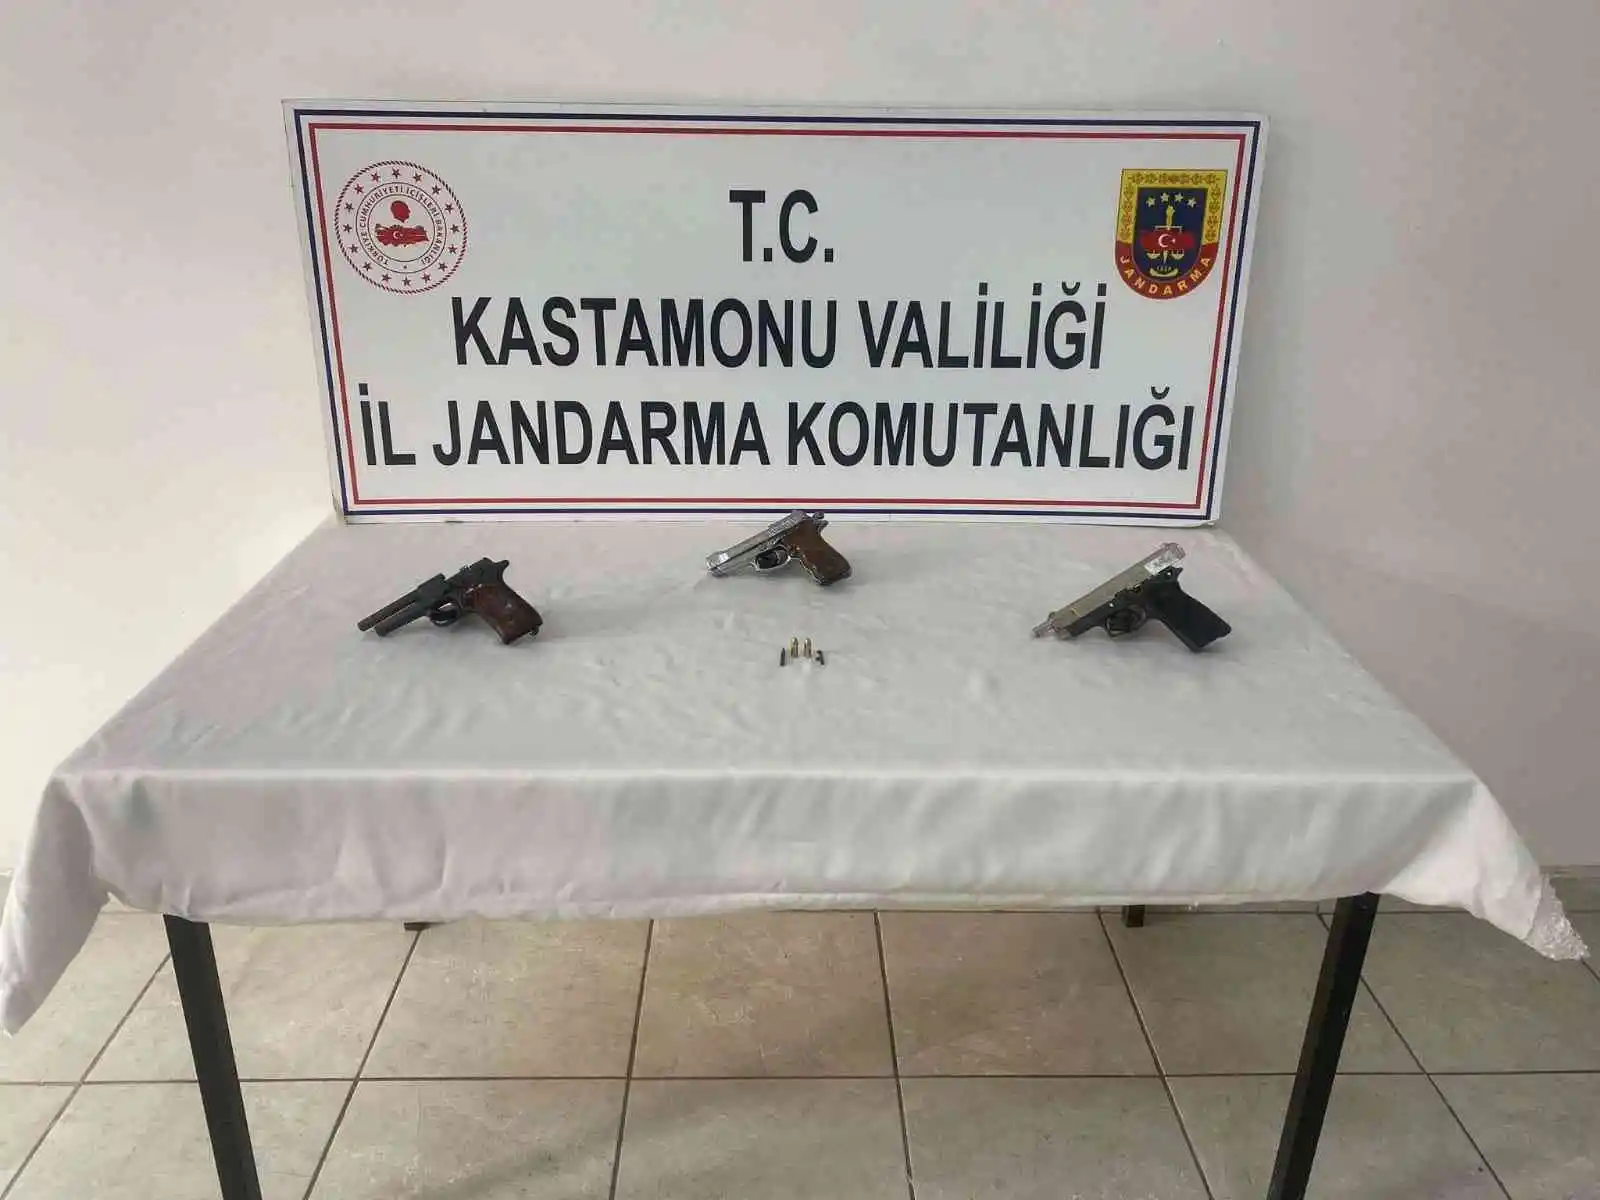 Kastamonu'da ruhsatsız silah operasyonu: 1 gözaltı
